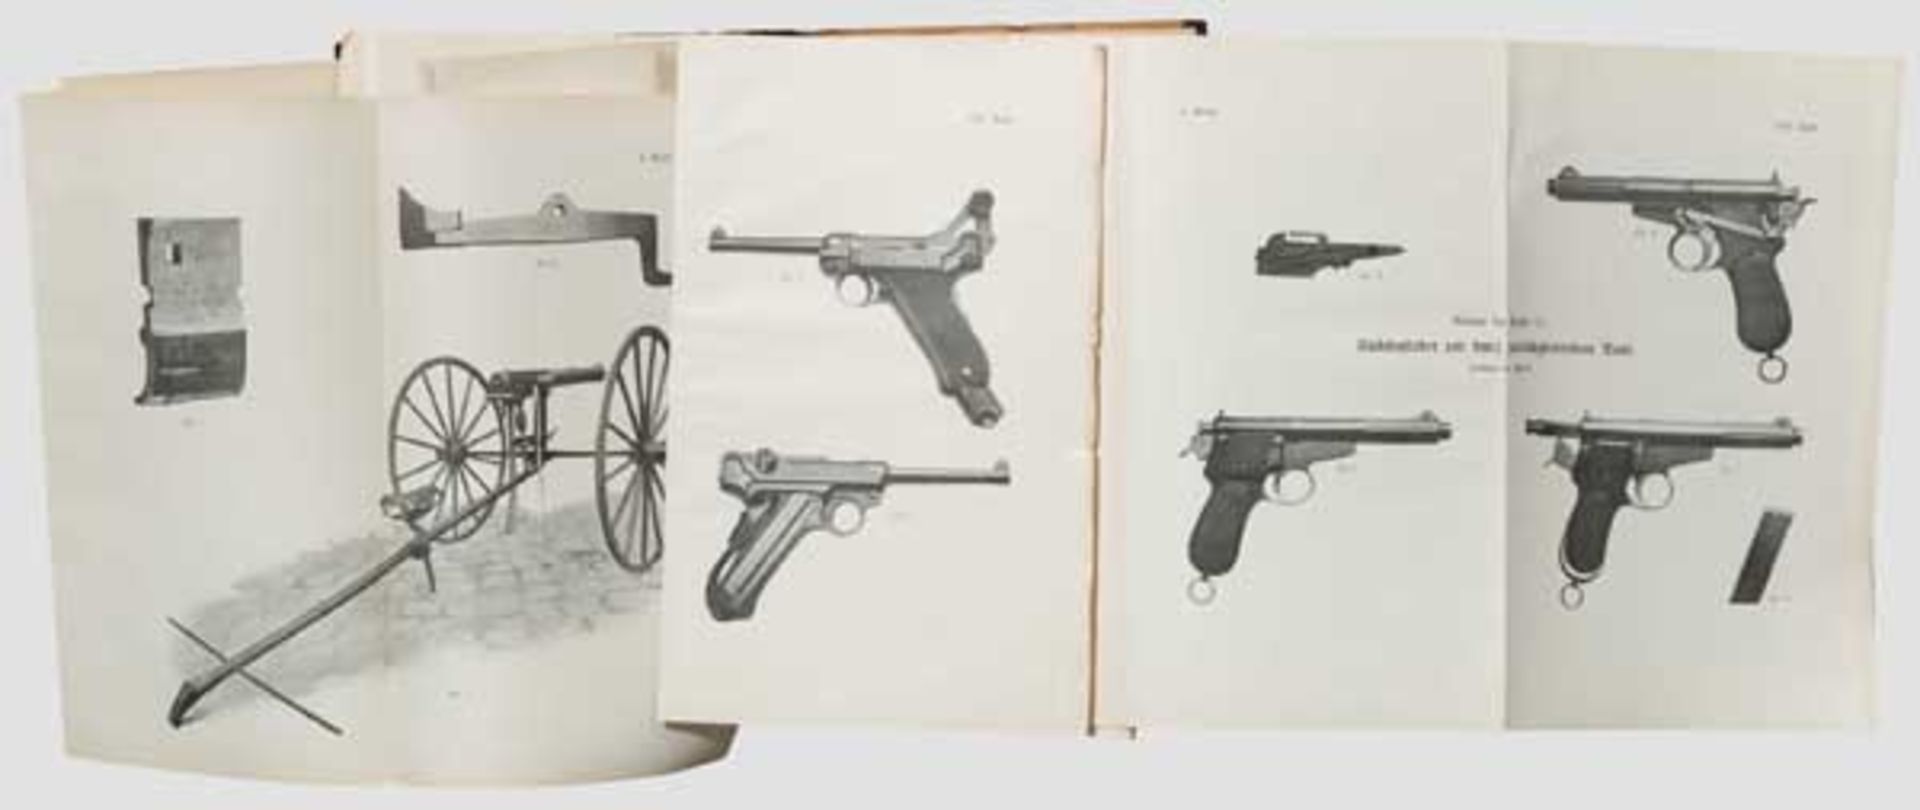 Karel Krnka, "Die prinzipiellen Eigenschaften der automatischen Feuerwaffen" Originalausgabe Wien - Bild 2 aus 2